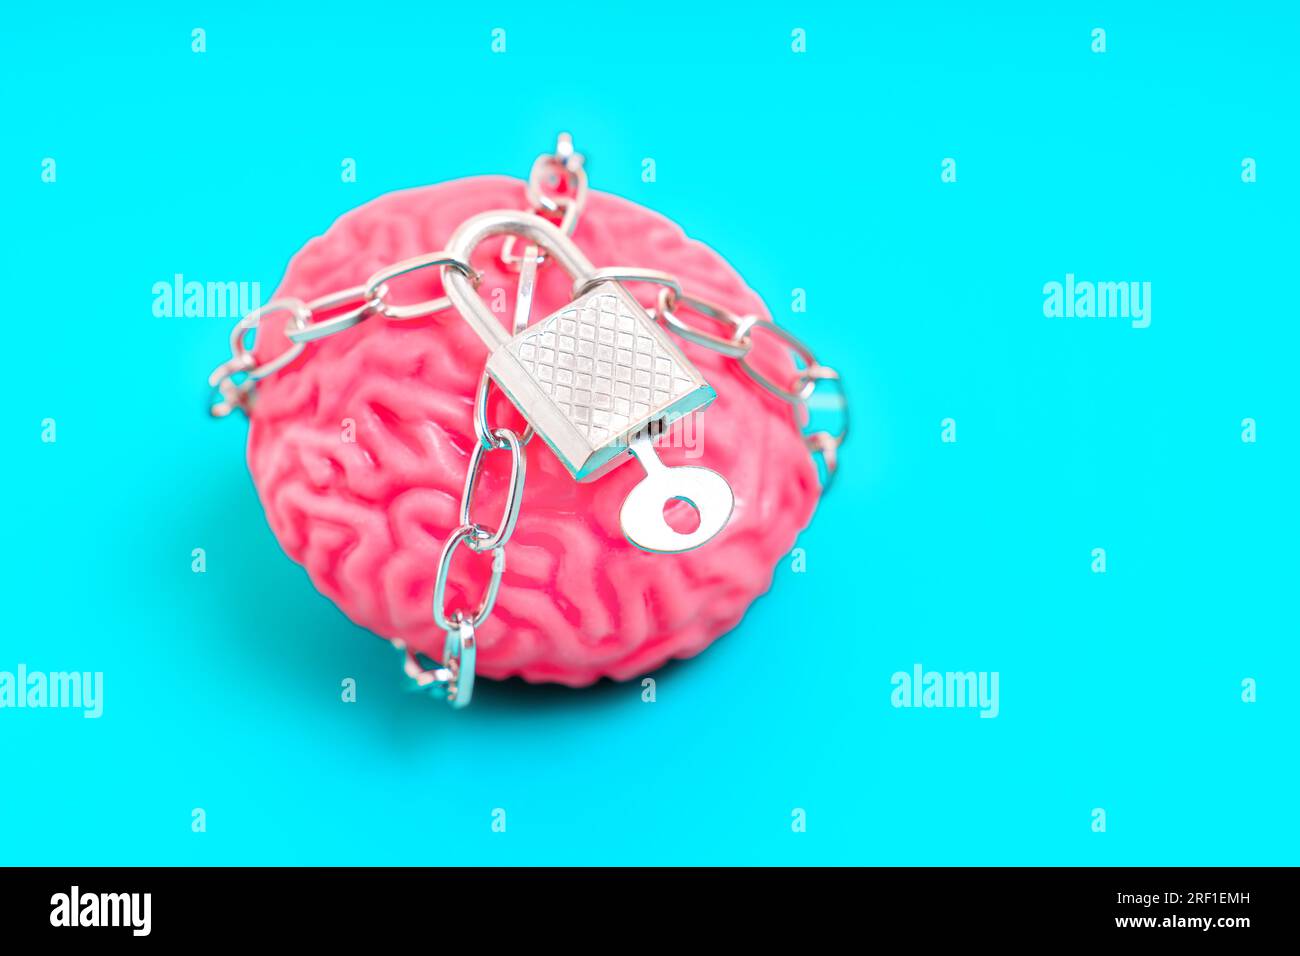 Nahaufnahme eines gelartigen menschlichen Gehirnmodells, das durch Ketten begrenzt und mit einem Vorhängeschloss auf blauem Hintergrund gesichert ist. Der Gedanke, geistig zu sein Stockfoto